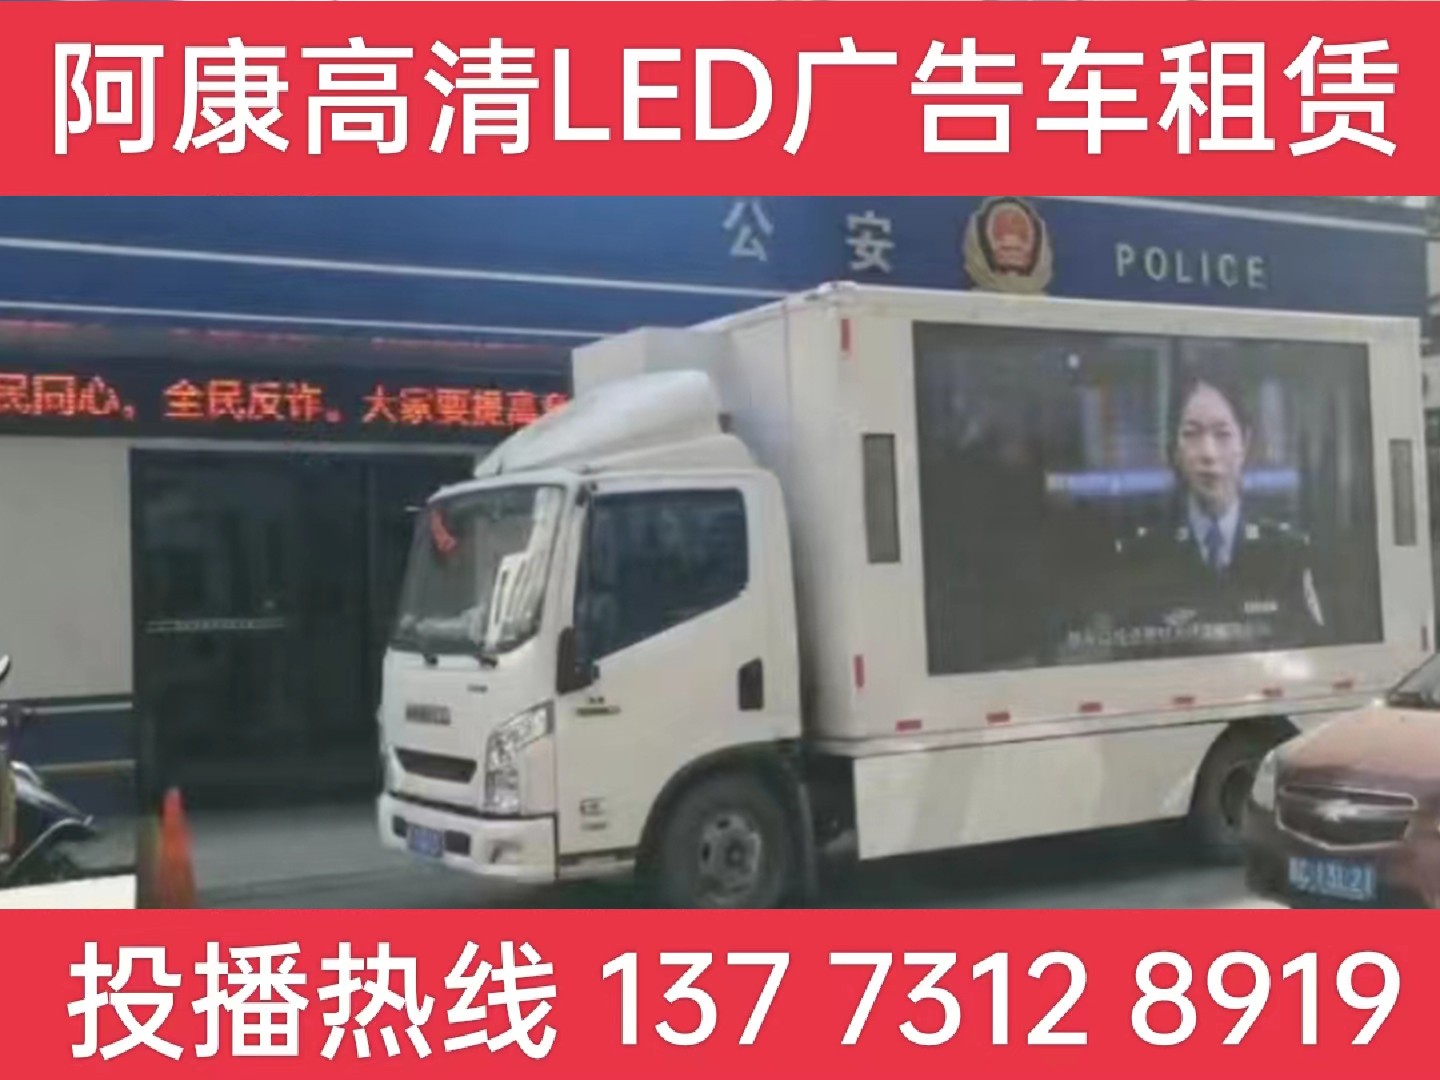 南京LED广告车租赁-反诈宣传